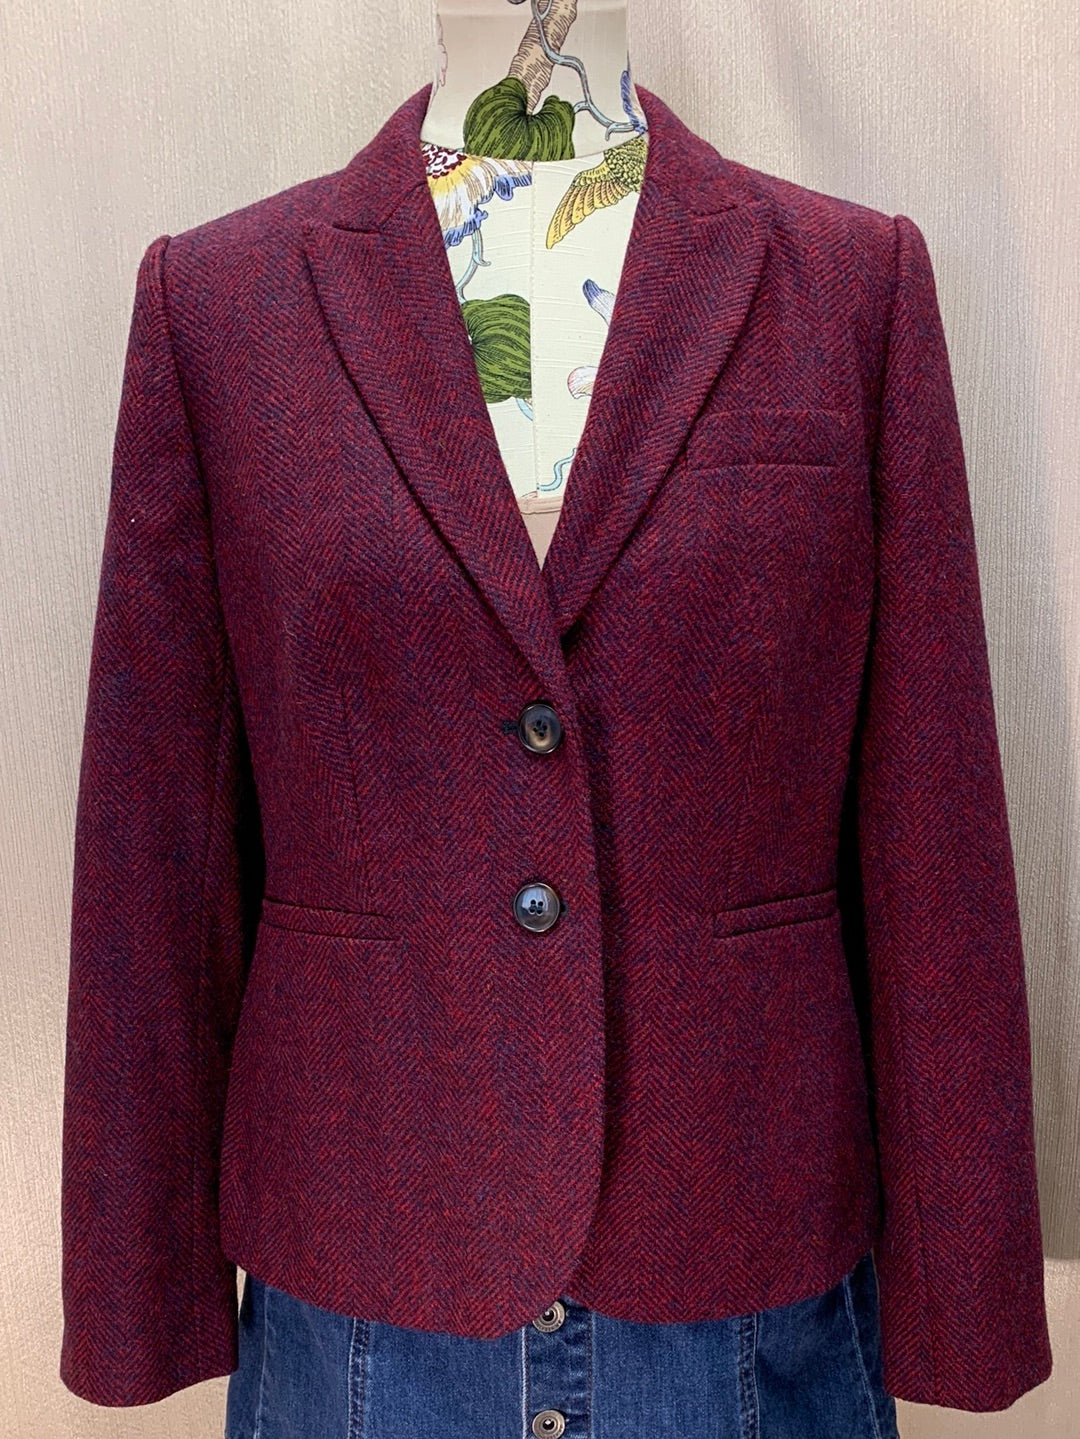 BODEN red blue Wool Herringbone British Tweed by Moon Jacket - US 8 | UK 12